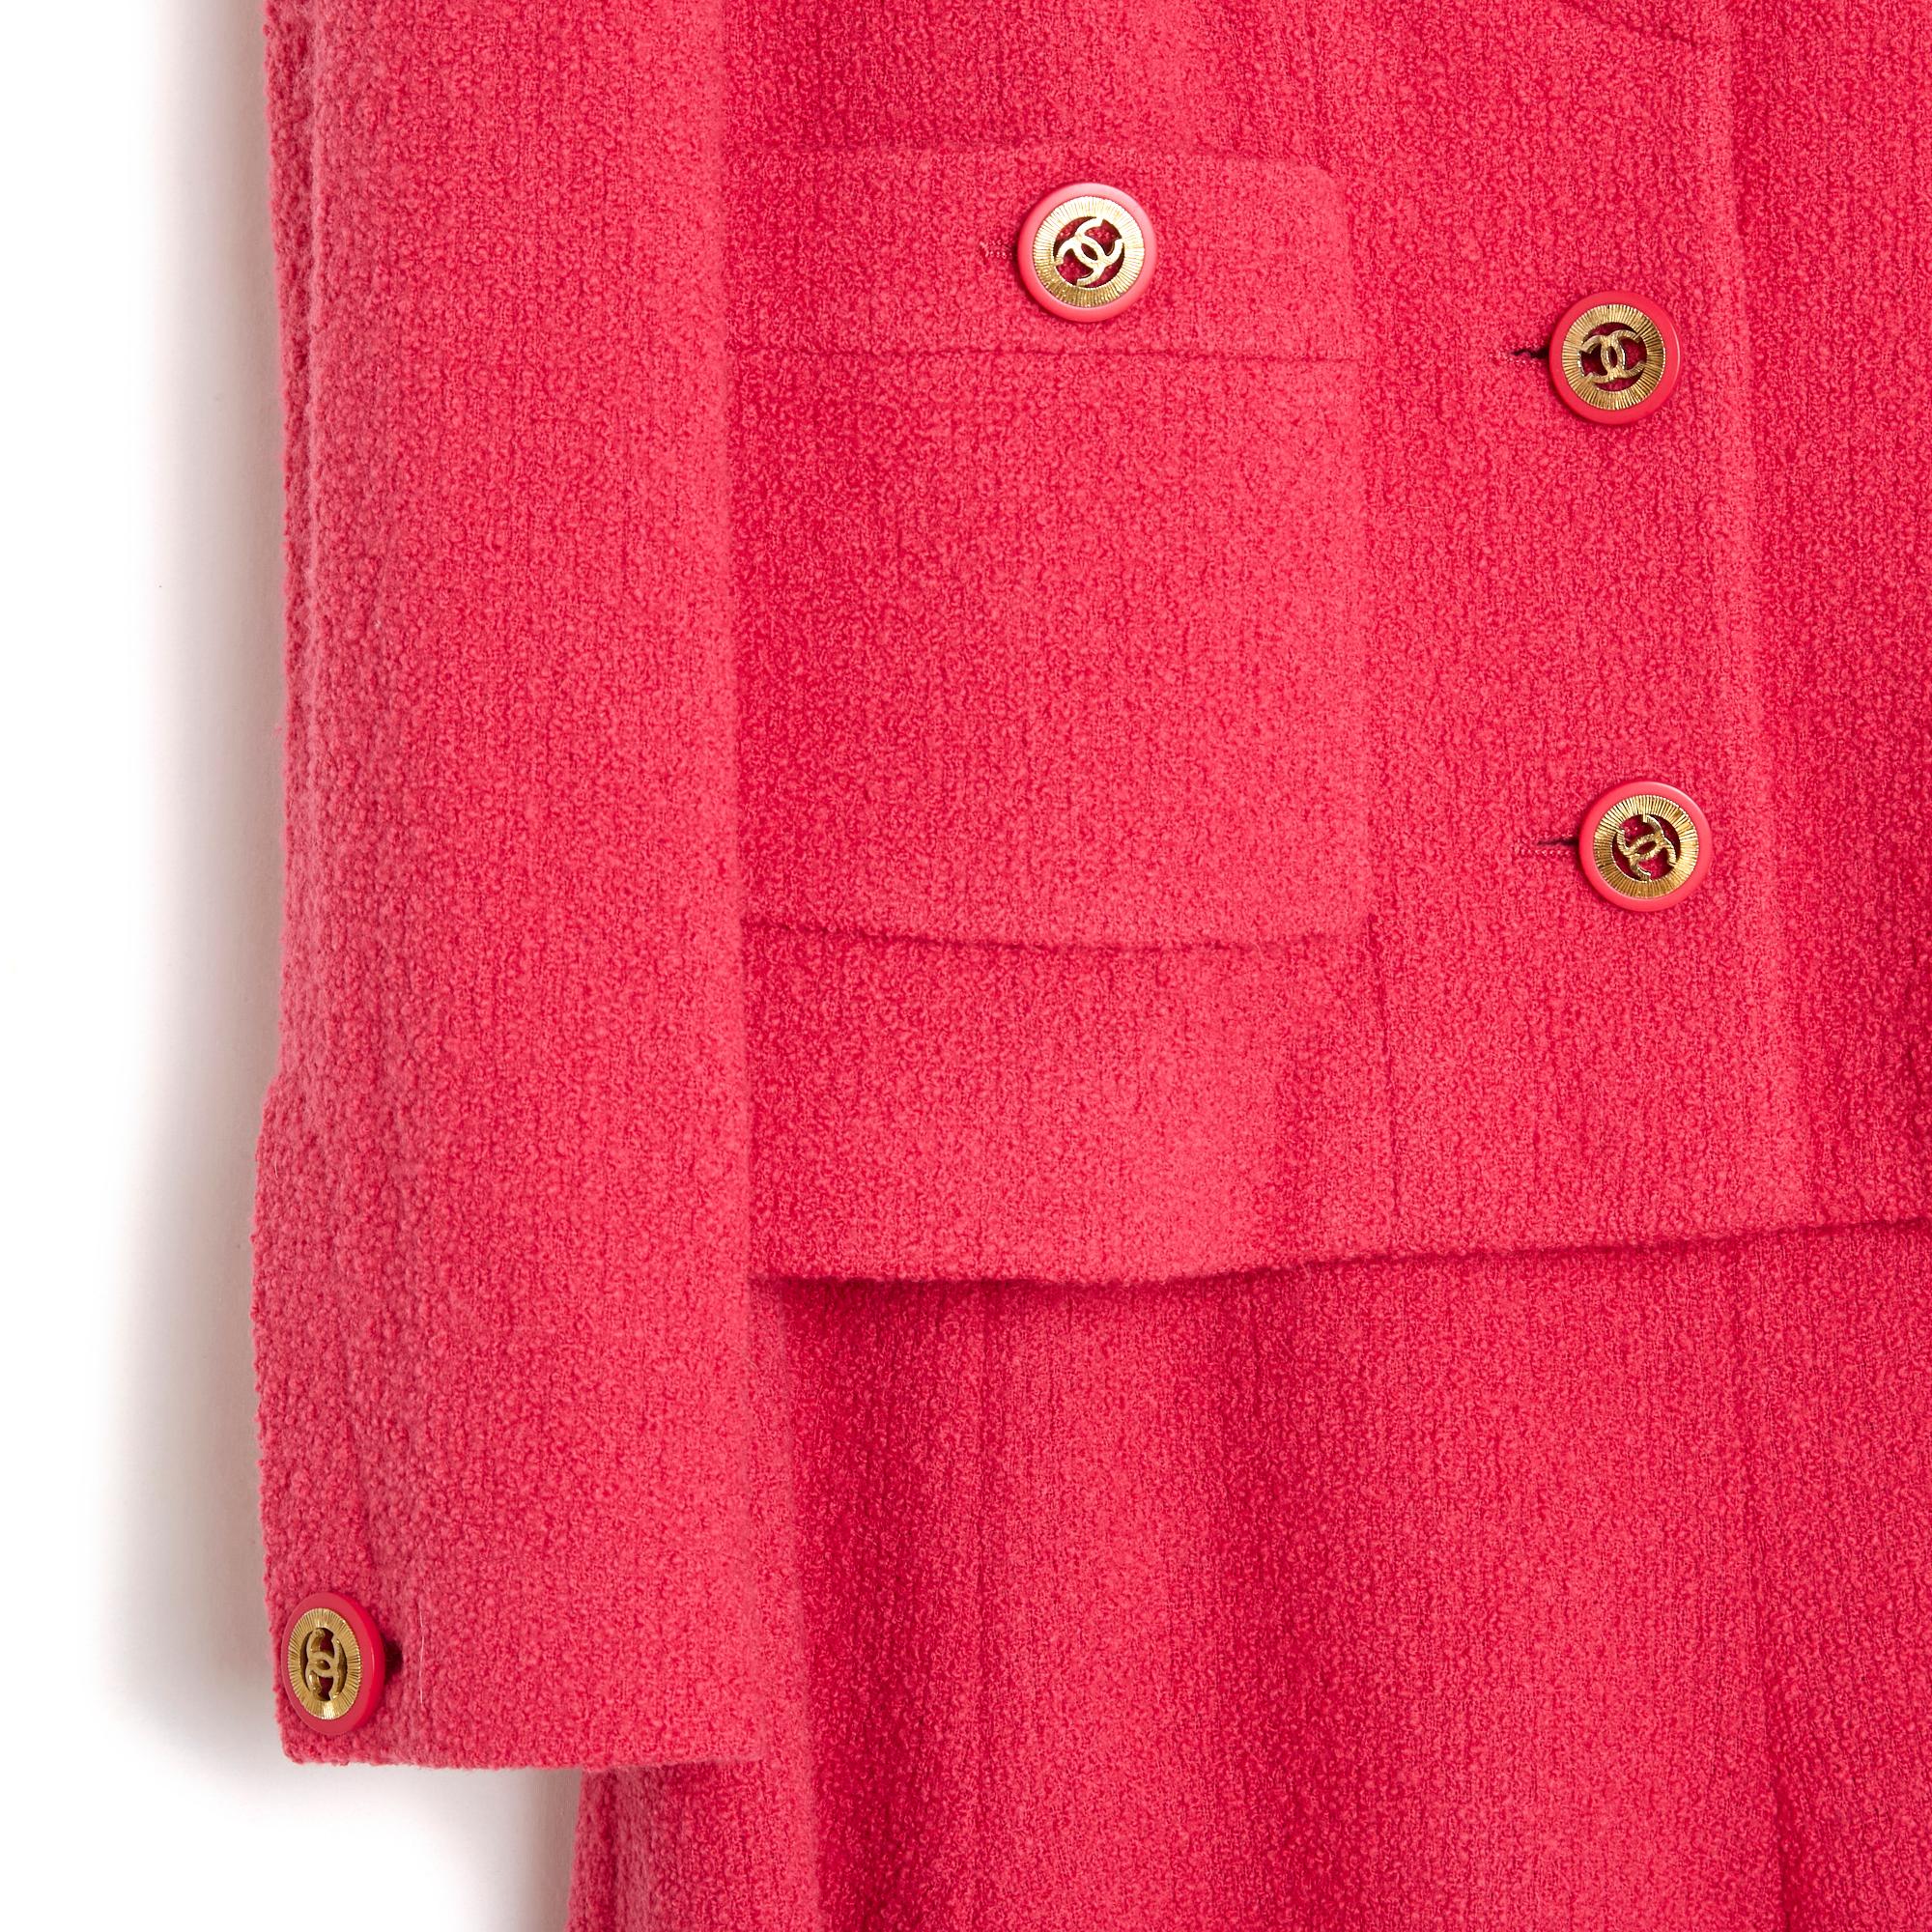 Ensemble Chanel par Karl Lagerfeld, collection Automne Hiver 1991, en éponge de laine rose vif, composé d'une veste, col rond fermé par 3 boutons marqués CC, 2 poches plaquées fermées par un bouton coordonné, comme les manches longues, jupe évasée,